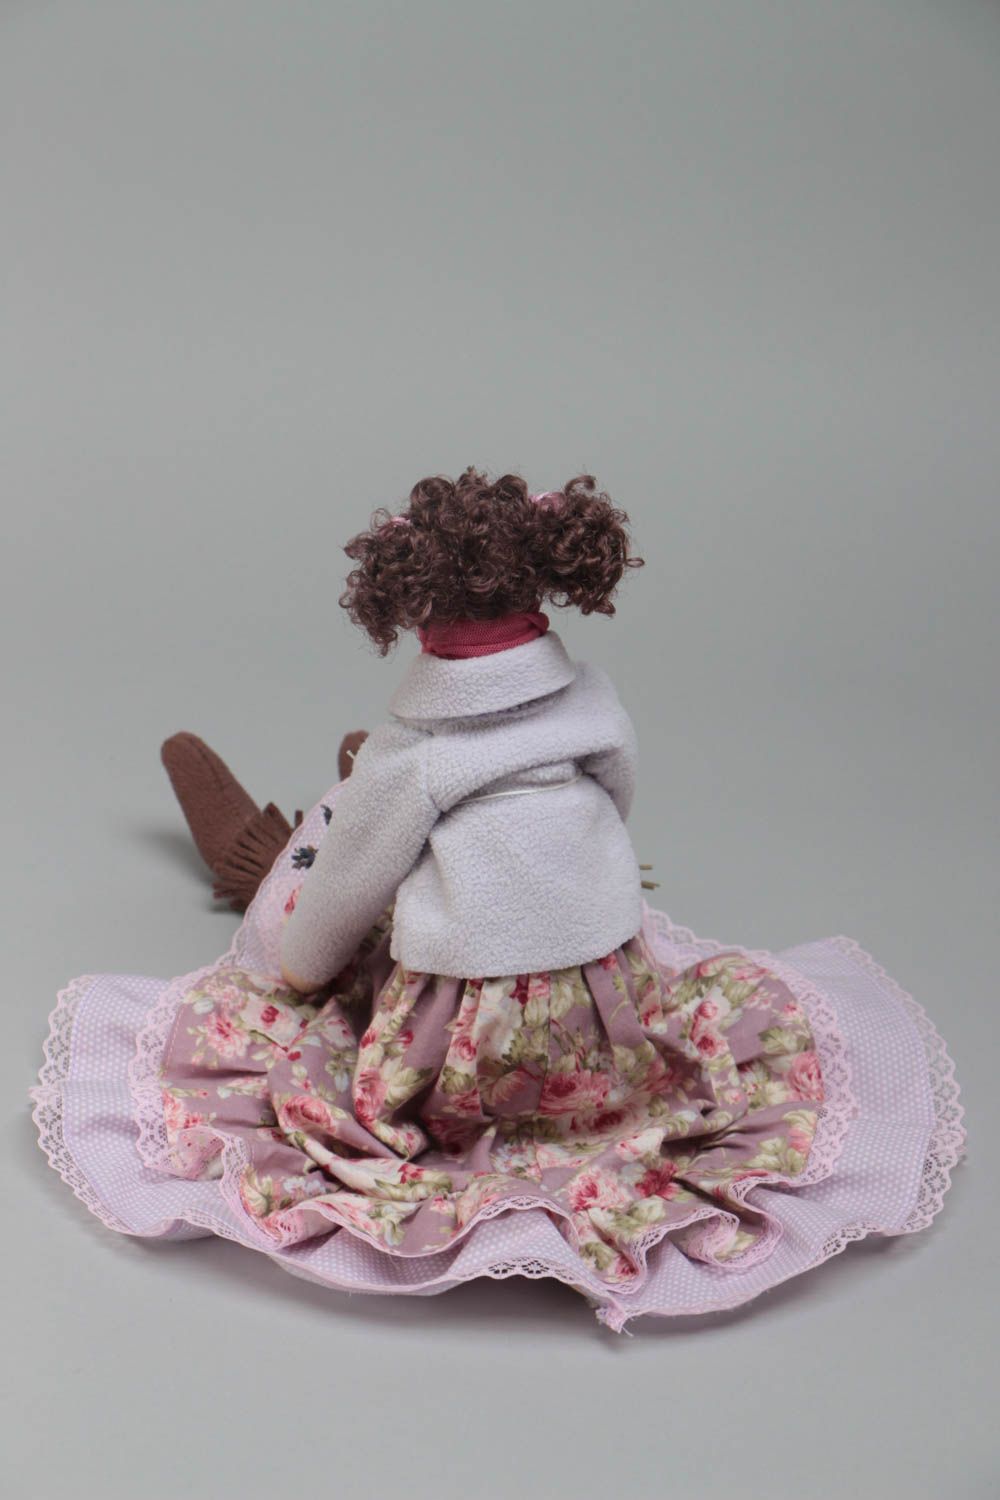 Handmade künstlerische Puppe aus Stoff klein mit Locken schön für Interieur foto 4